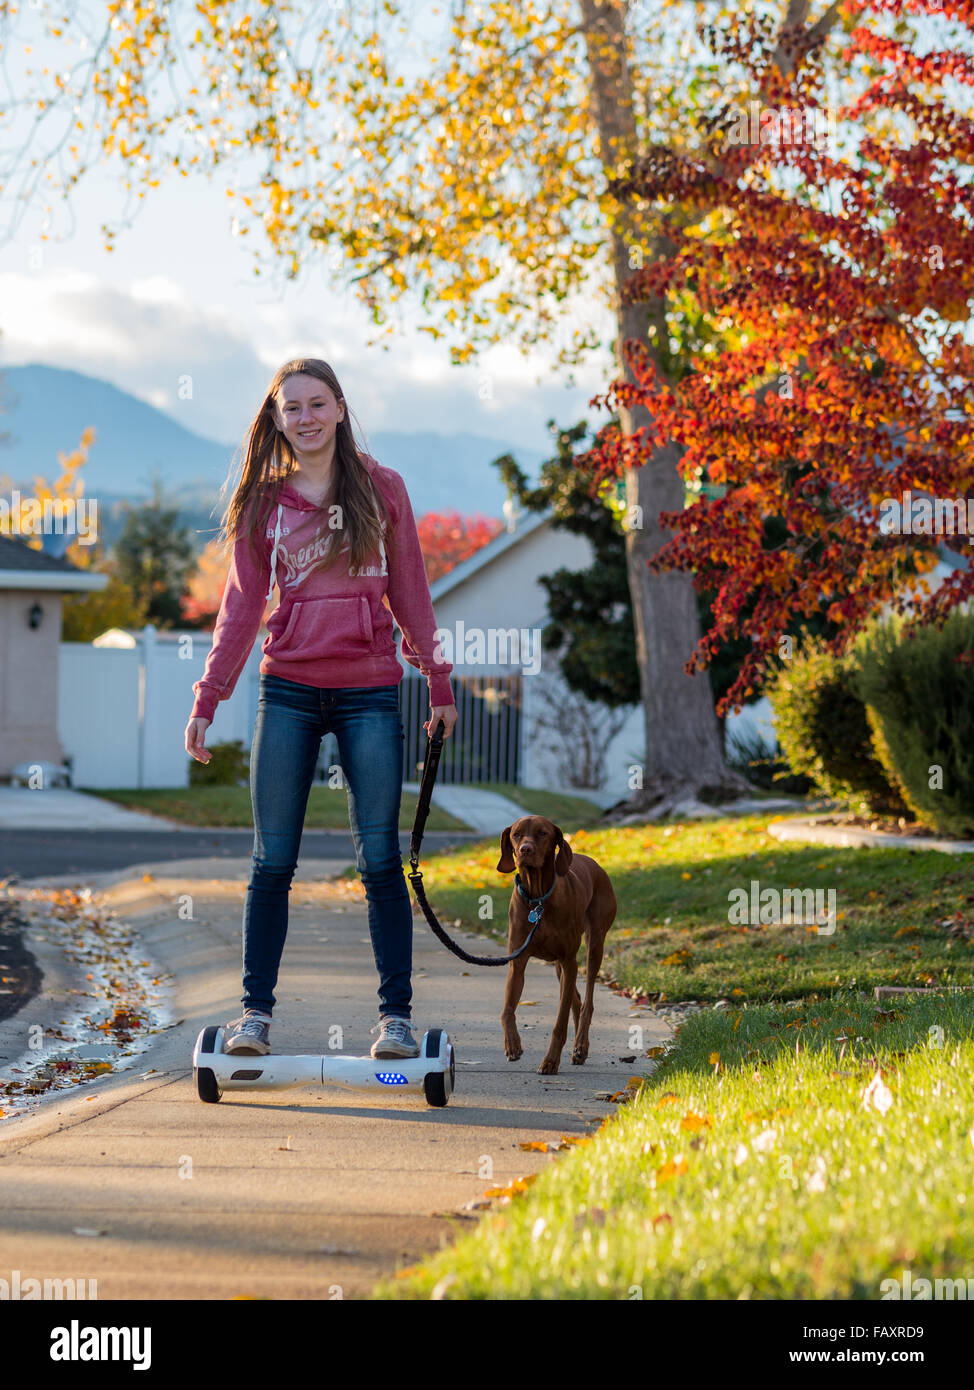 REDDING, CA, USA - 24. November 2015: Teenager-Mädchen Spaziergänge mit Hund  selbstbalancierende Zweirad-Roller, auch genannt ein Hoverboard  Stockfotografie - Alamy